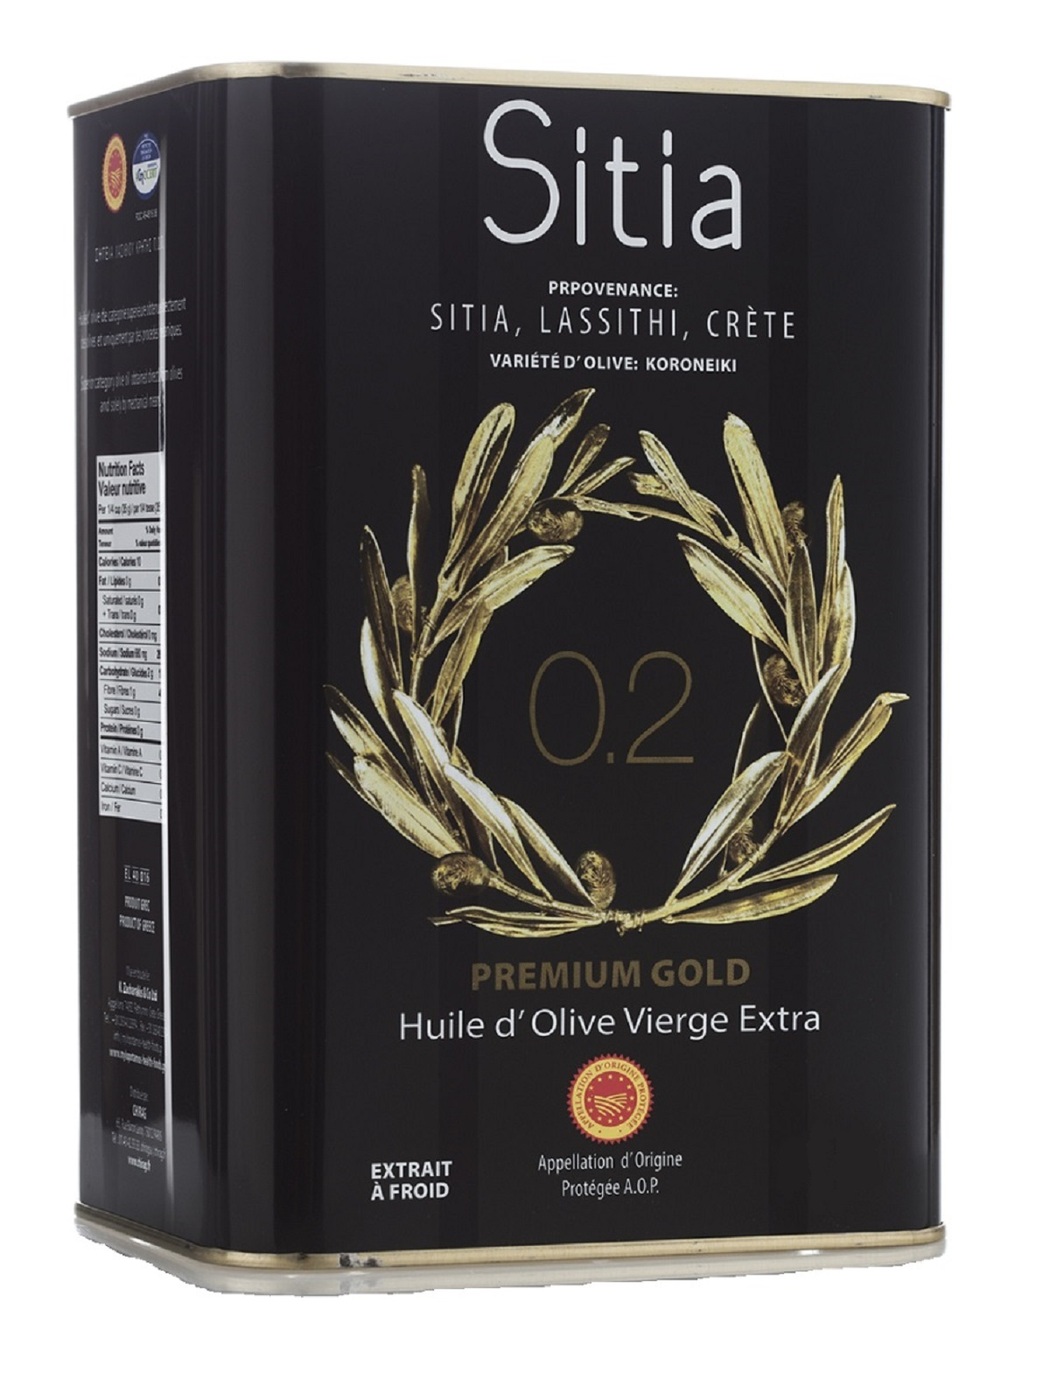 Оливковое масло отзывы покупателей. Оливковое масло p.d.o. Sitia 02. Масло оливковое Sitia 0.2. Оливковое масло p.d.o. Sitia 02 Extra Virgin, 1л. Оливковое масло Extra Virgin 0,2% Sitia p.d.o. 0,5л.